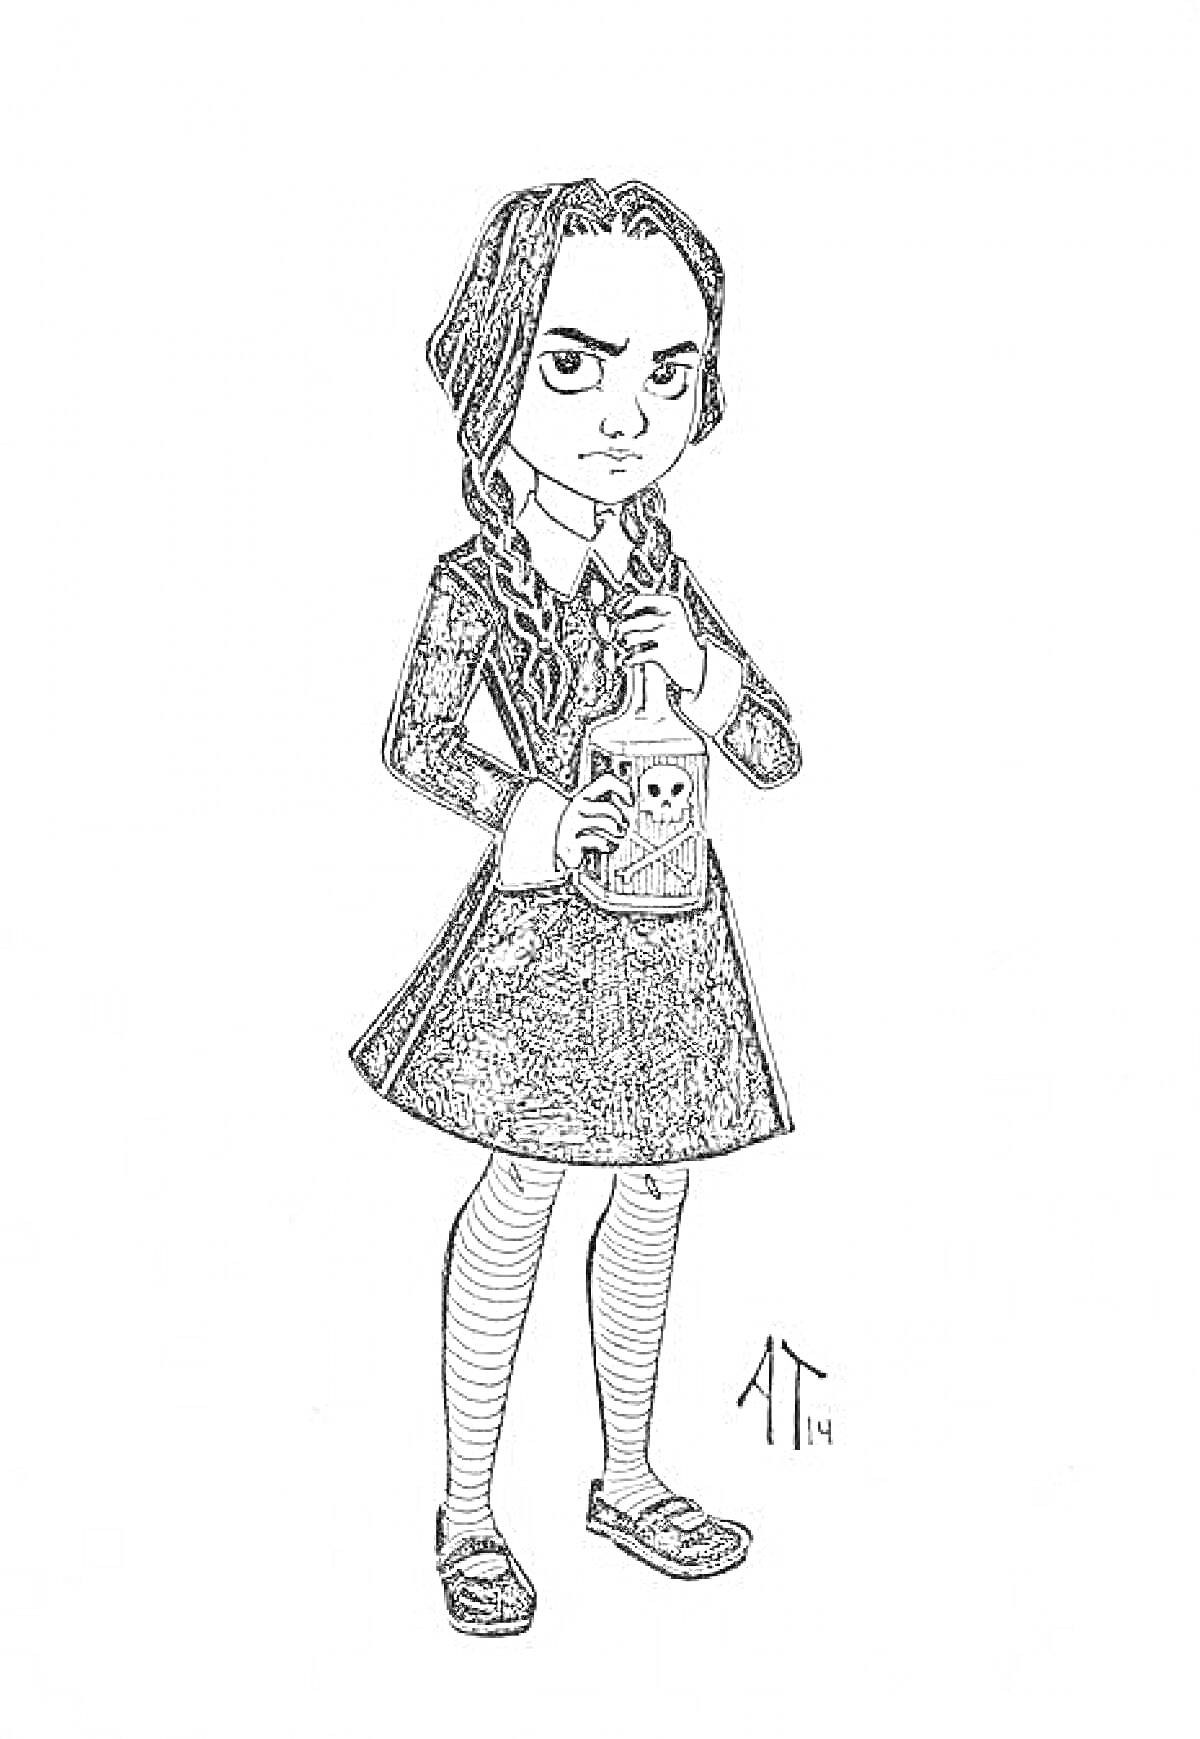 Раскраска Девочка в школьной форме с бутылкой с этикеткой черепа